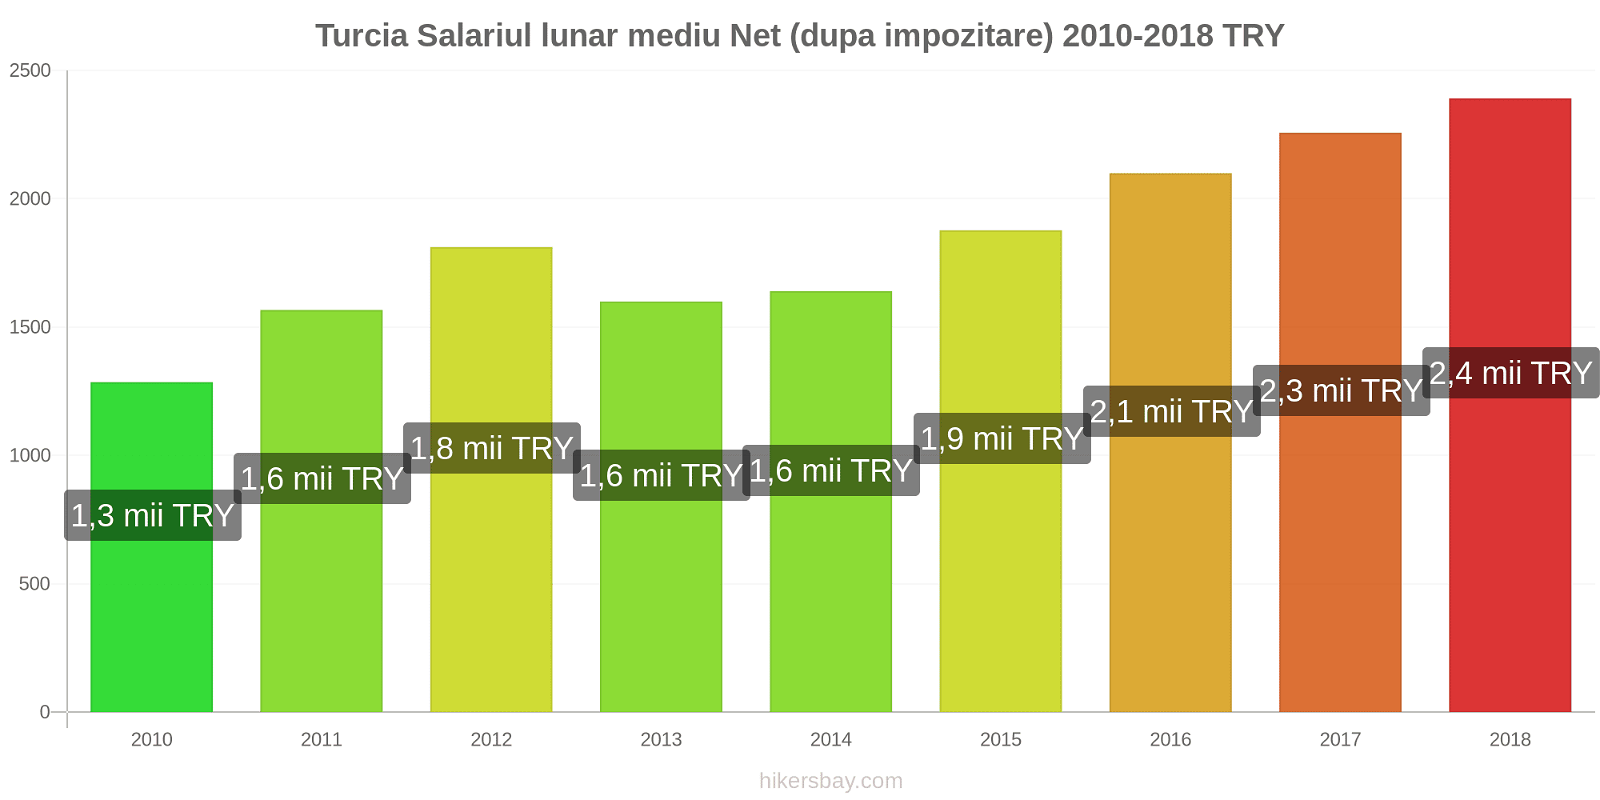 Turcia schimbări de prețuri Salariu net mediu lunar (după impozitare) hikersbay.com